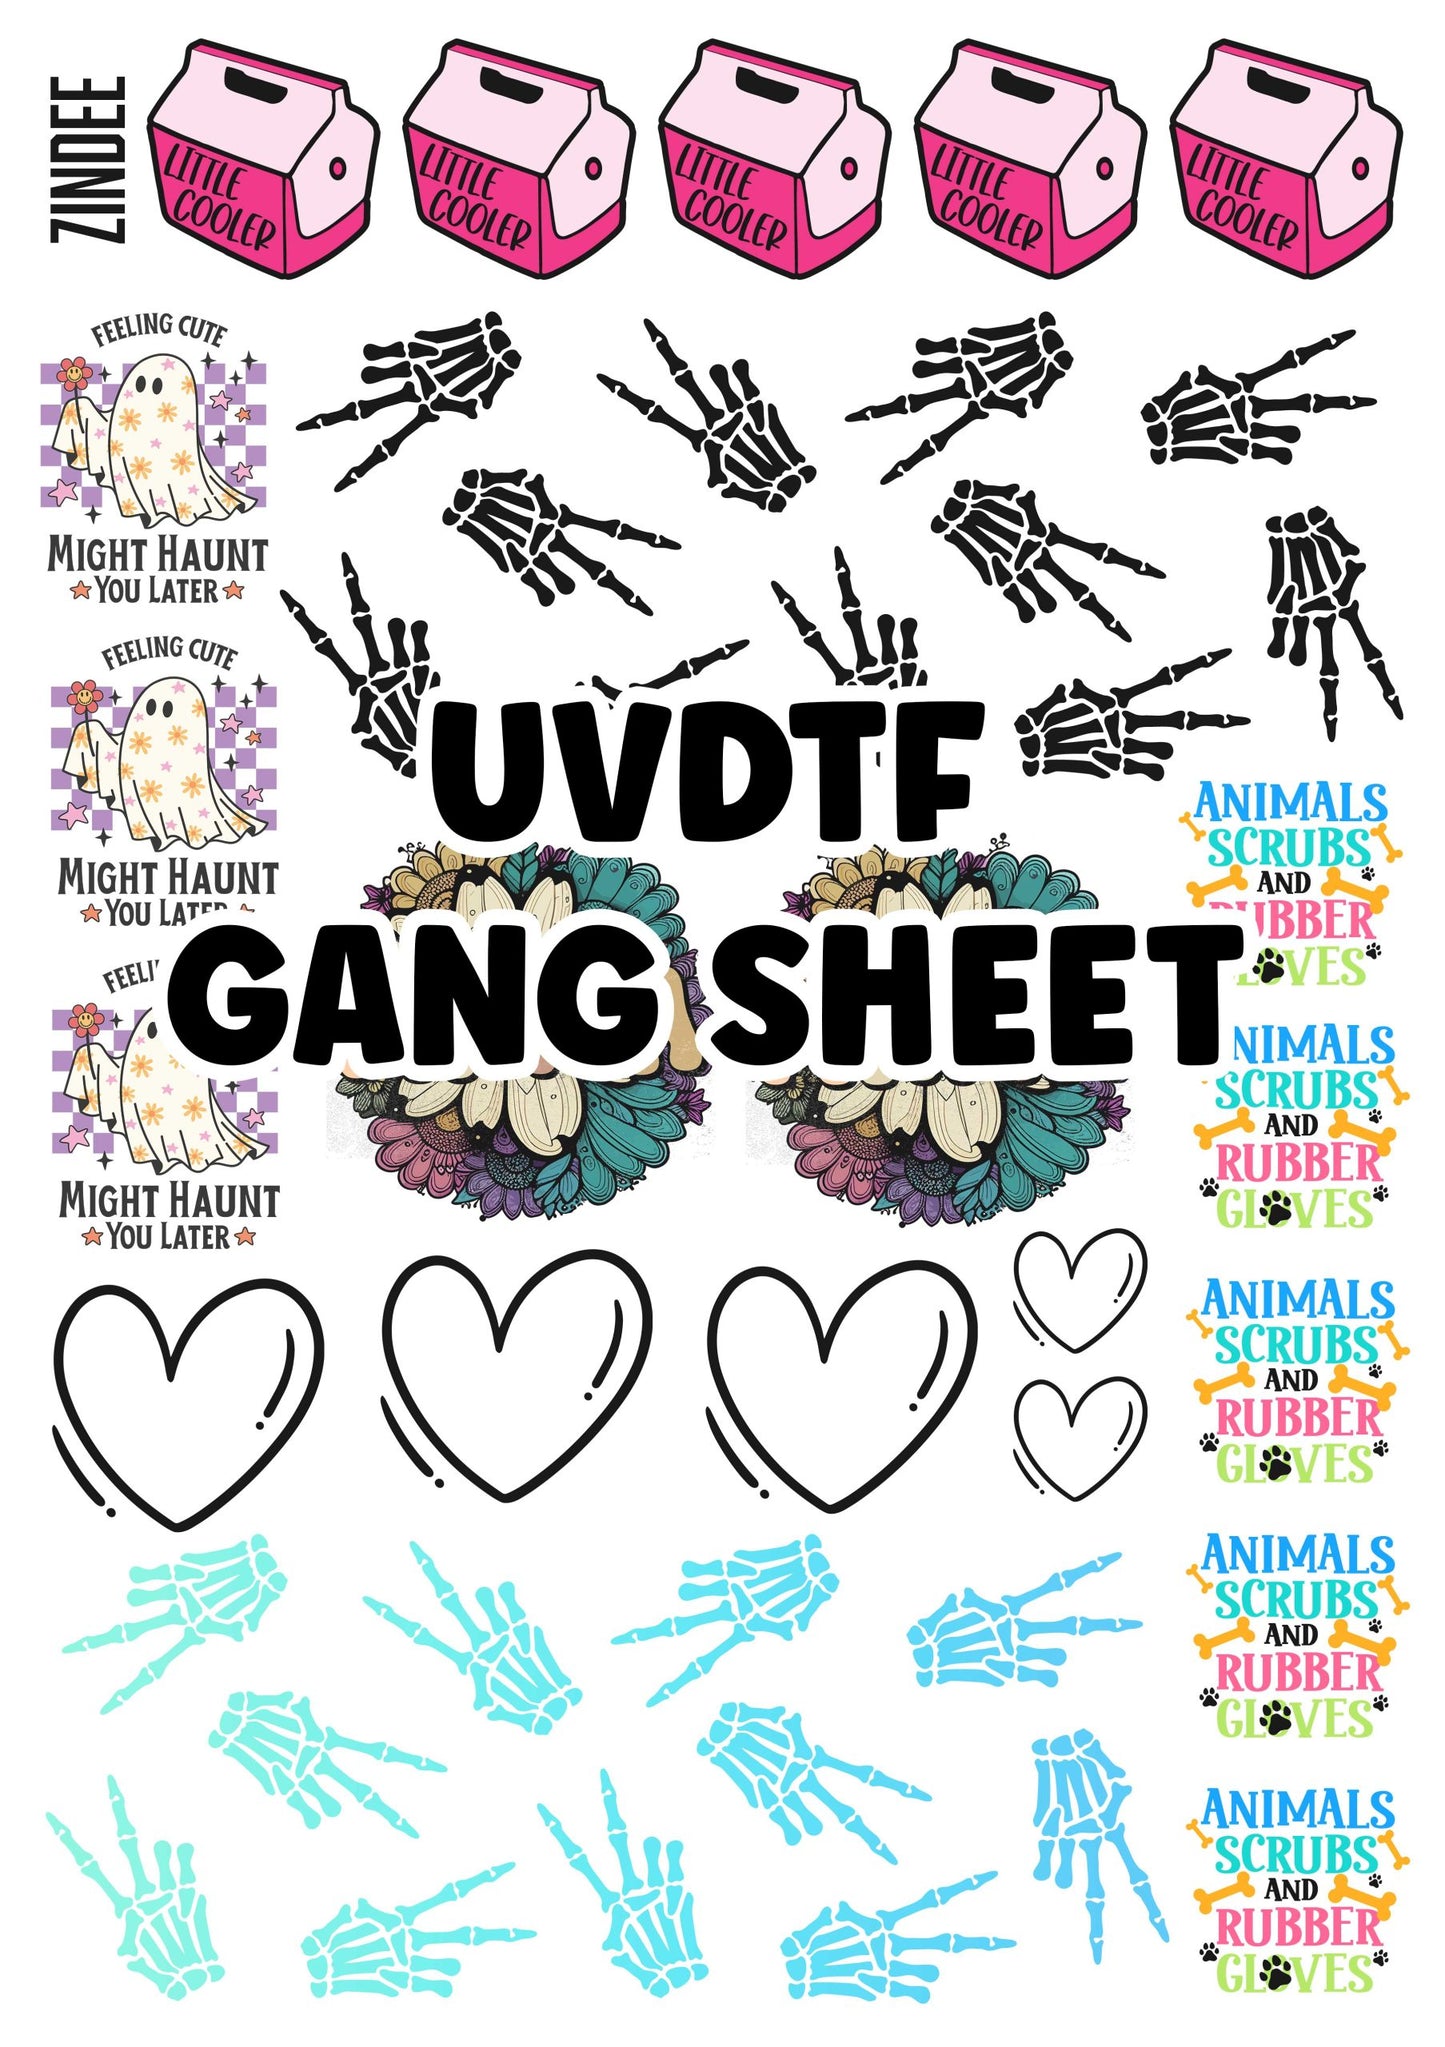 UV DTF Gang Sheet Builder For Solid Surfaces